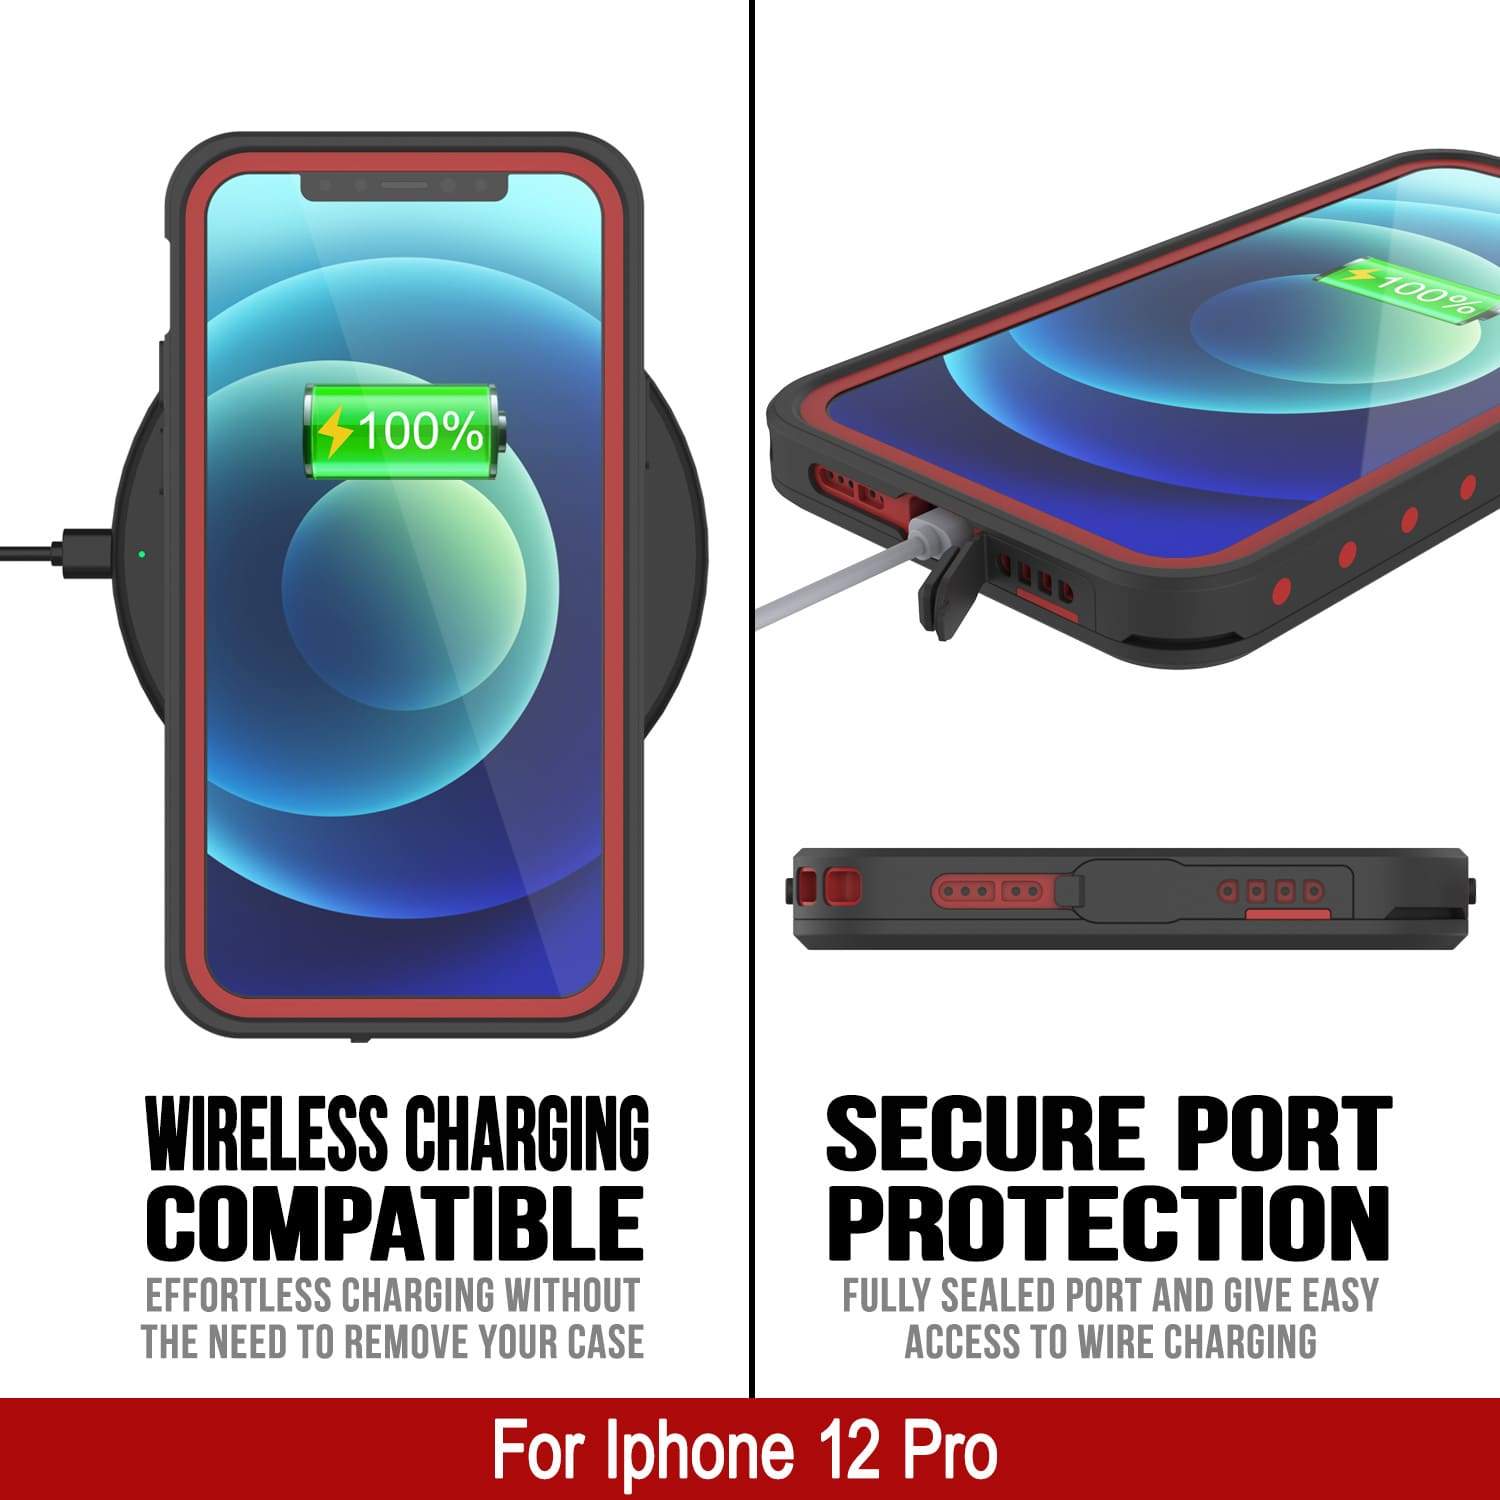 iPhone 12 Pro Waterproof IP68 Case, Punkcase [Red] [StudStar Series] [Slim Fit]